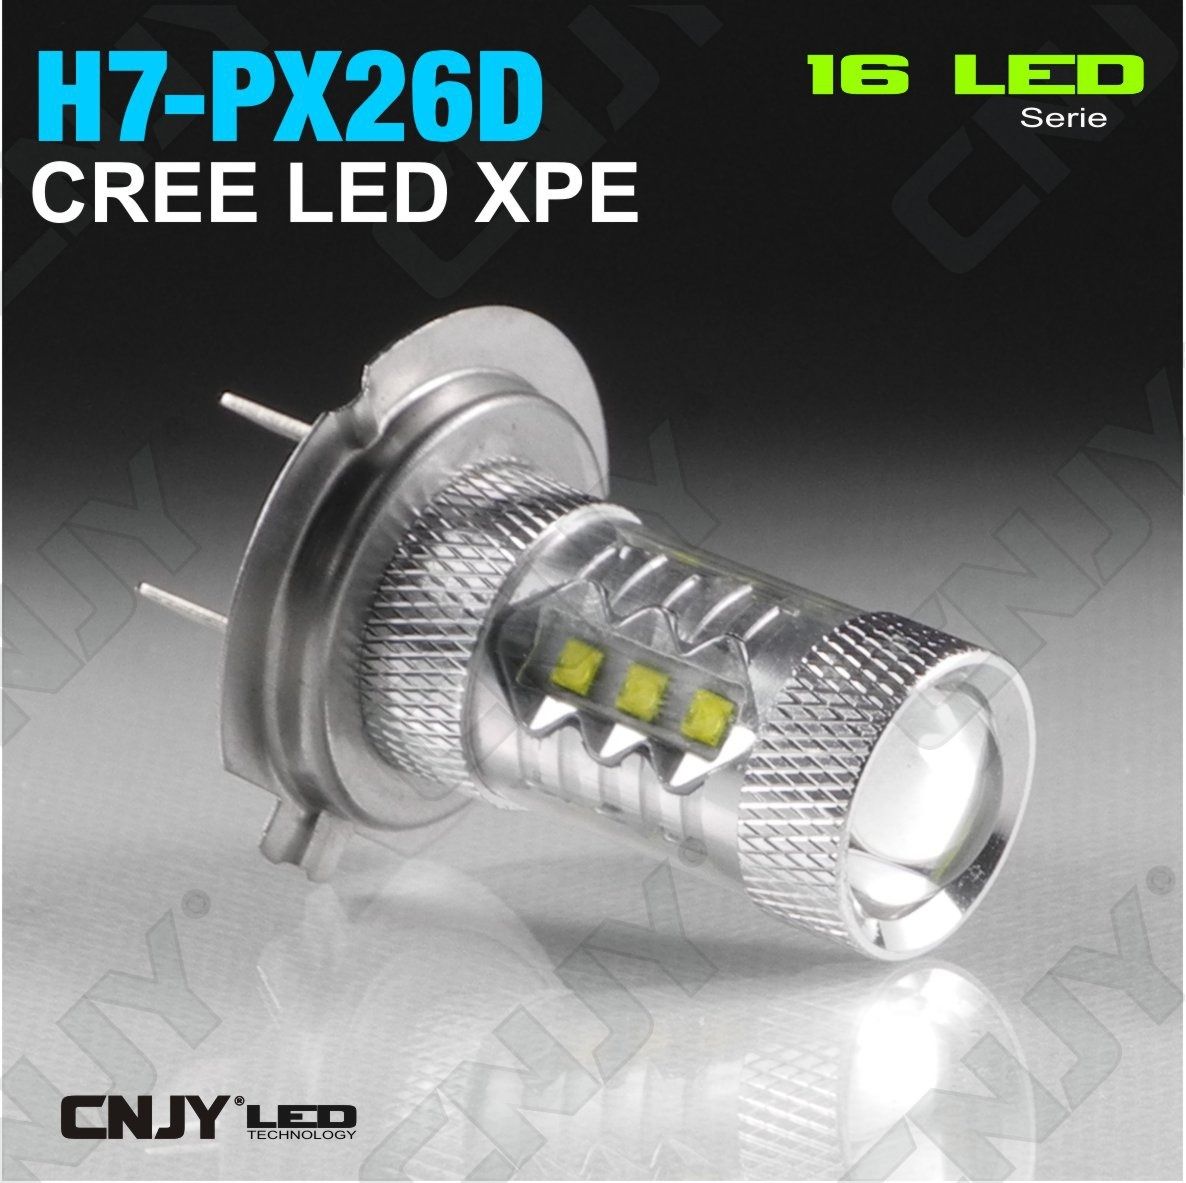 1 AMPOULE 16 LED H7 PX26D TYPE 80W CREE XPE LENTICULAIRE 12V POUR